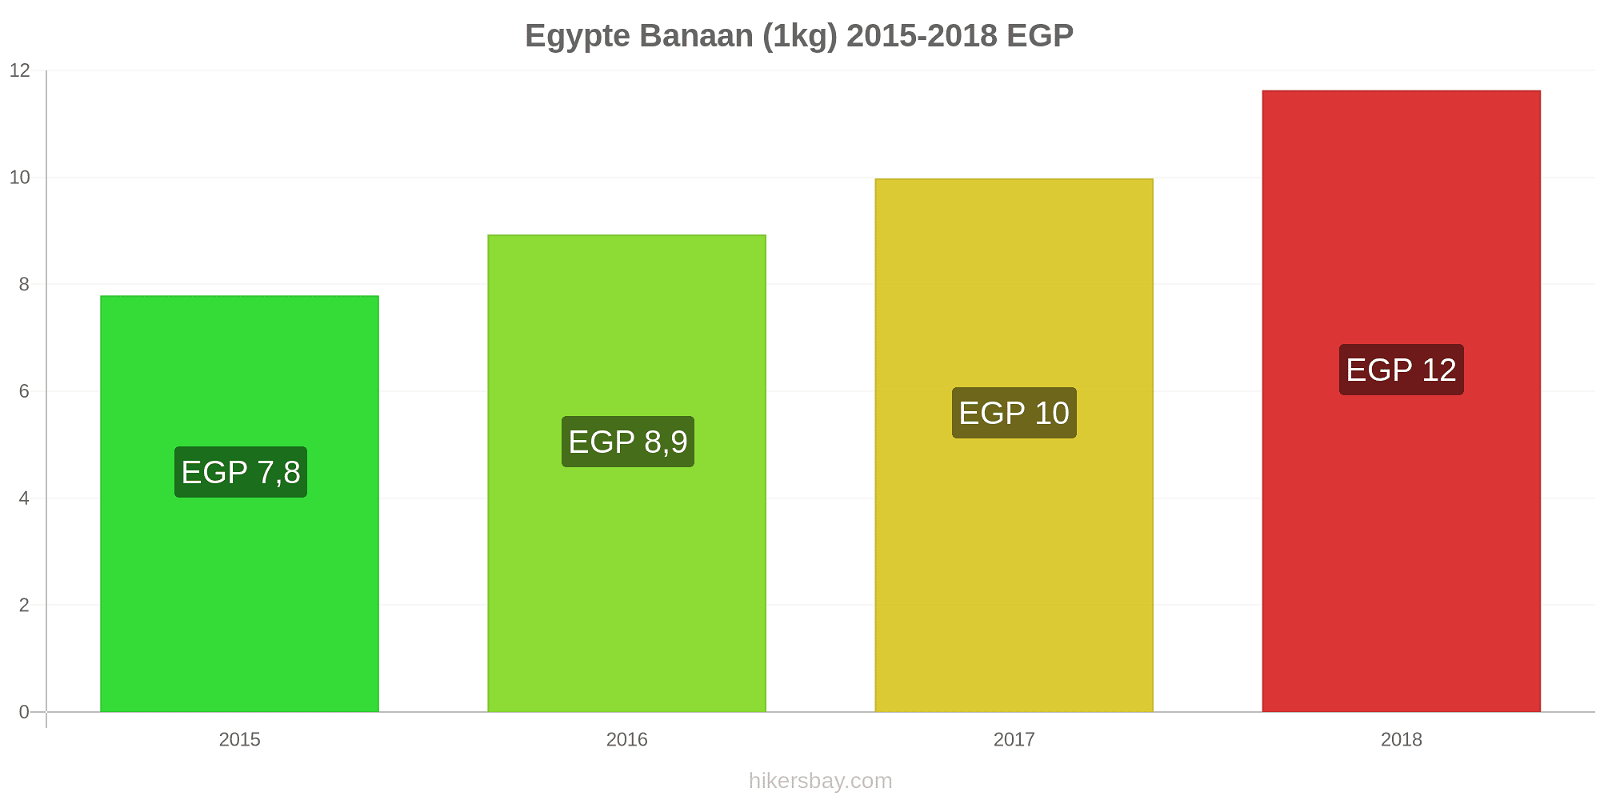 Egypte prijswijzigingen Bananen (1kg) hikersbay.com